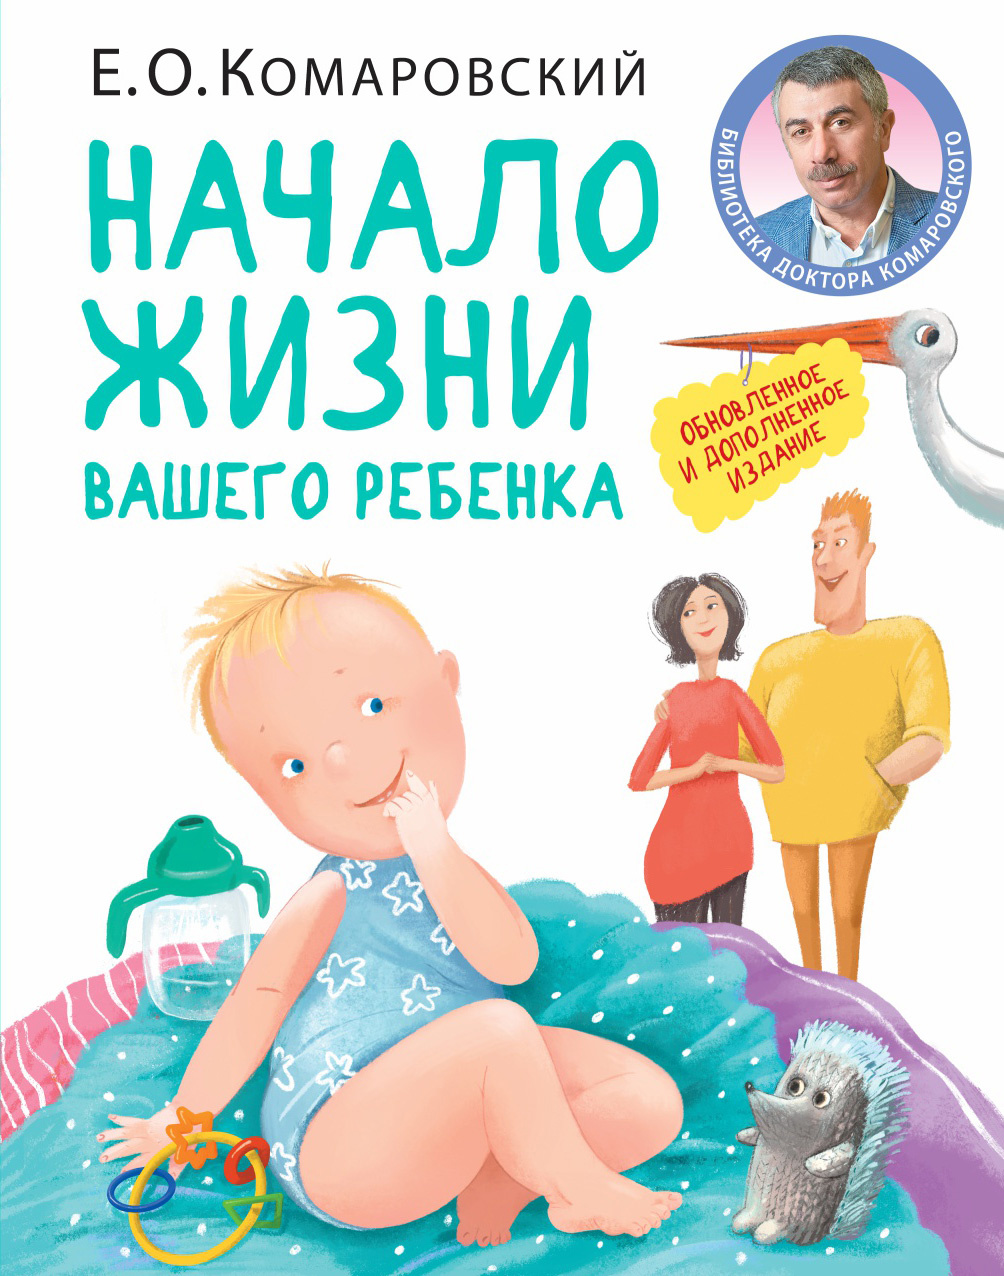 Начало жизни вашего ребенка. Автор — Евгений Комаровский. 